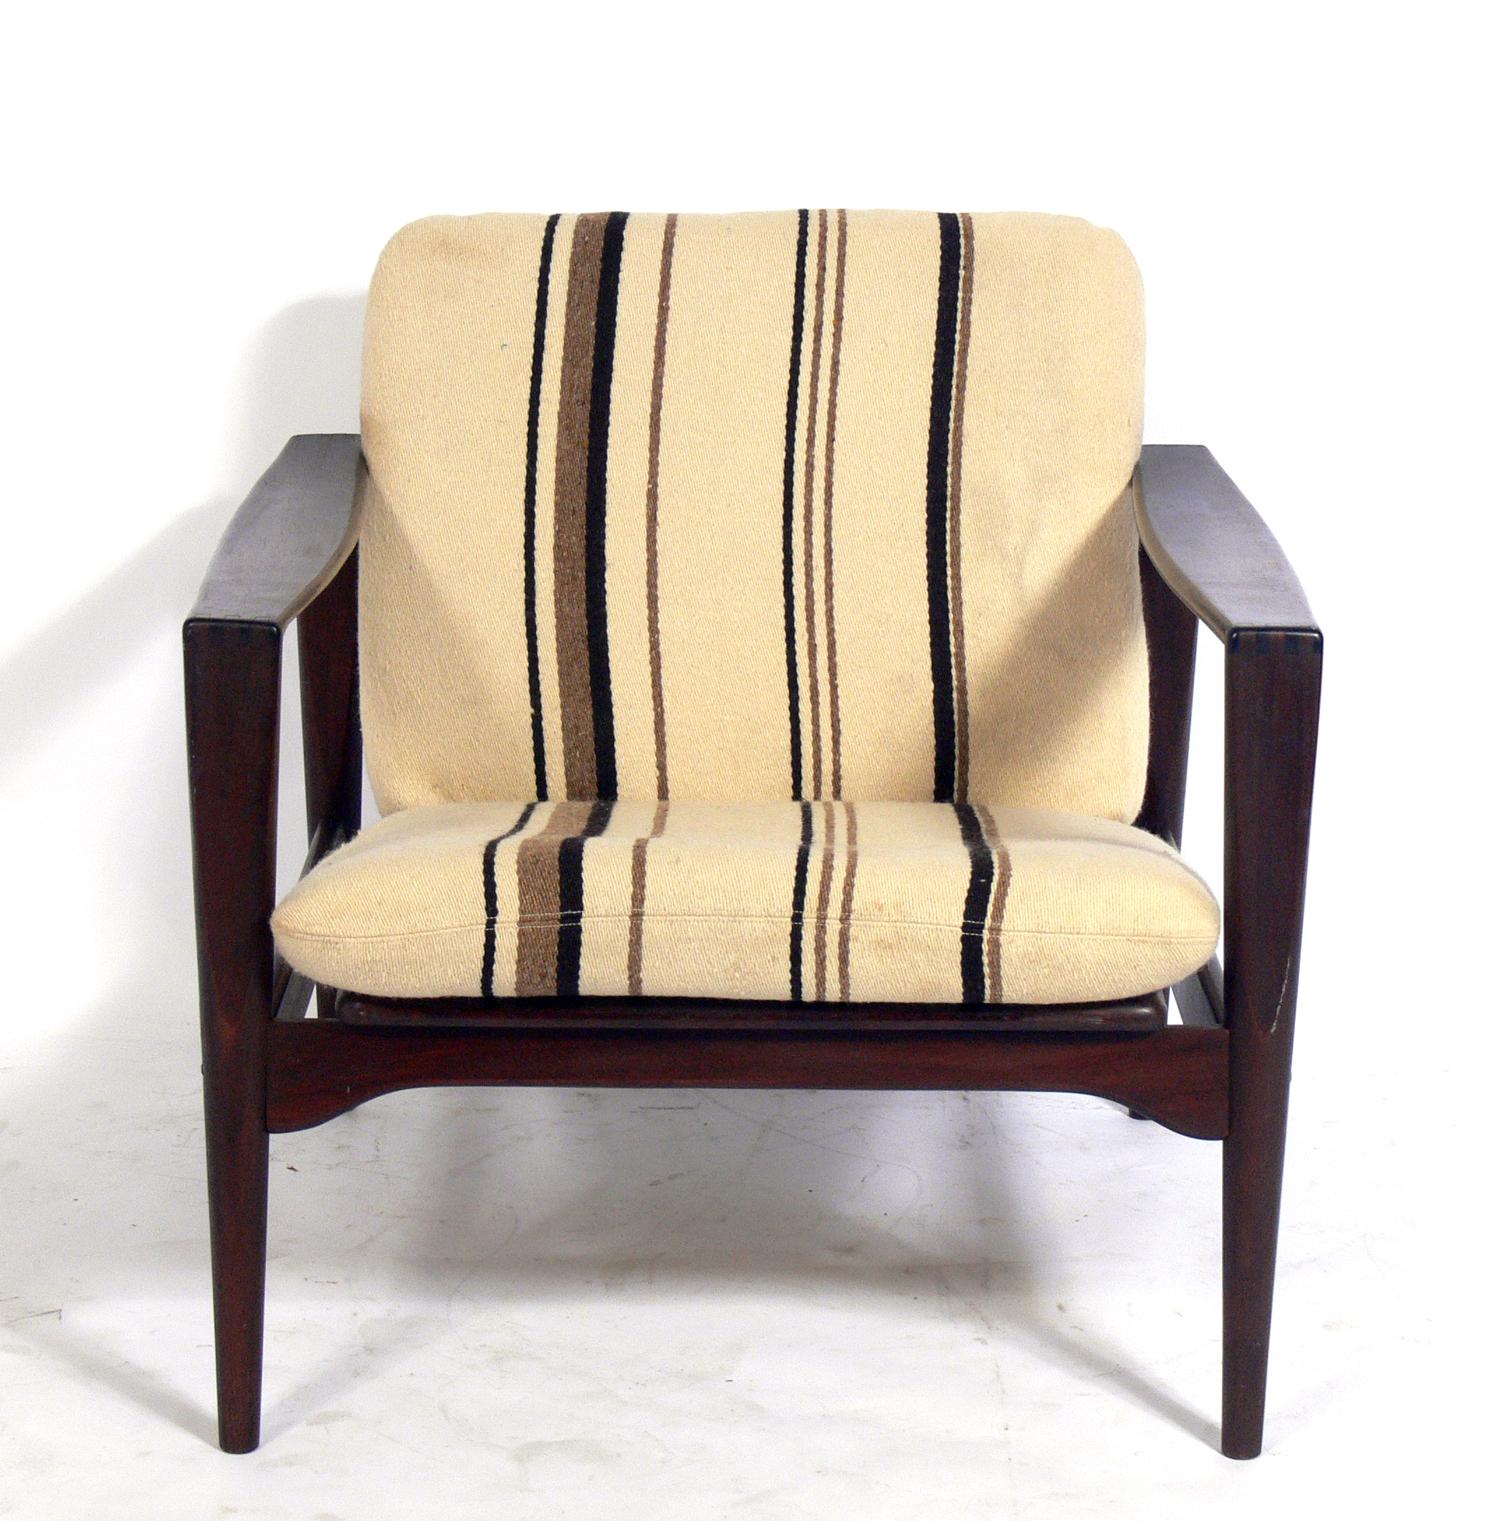 Moderner dänischer Sessel aus Palisanderholz, Dänemark, ca. 1960er Jahre. Die ursprüngliche gestreifte Wollpolsterung ist erhalten geblieben. Das schön gemaserte Palisanderholz wurde gereinigt und dänisch geölt. Die Armlehnen weisen eine